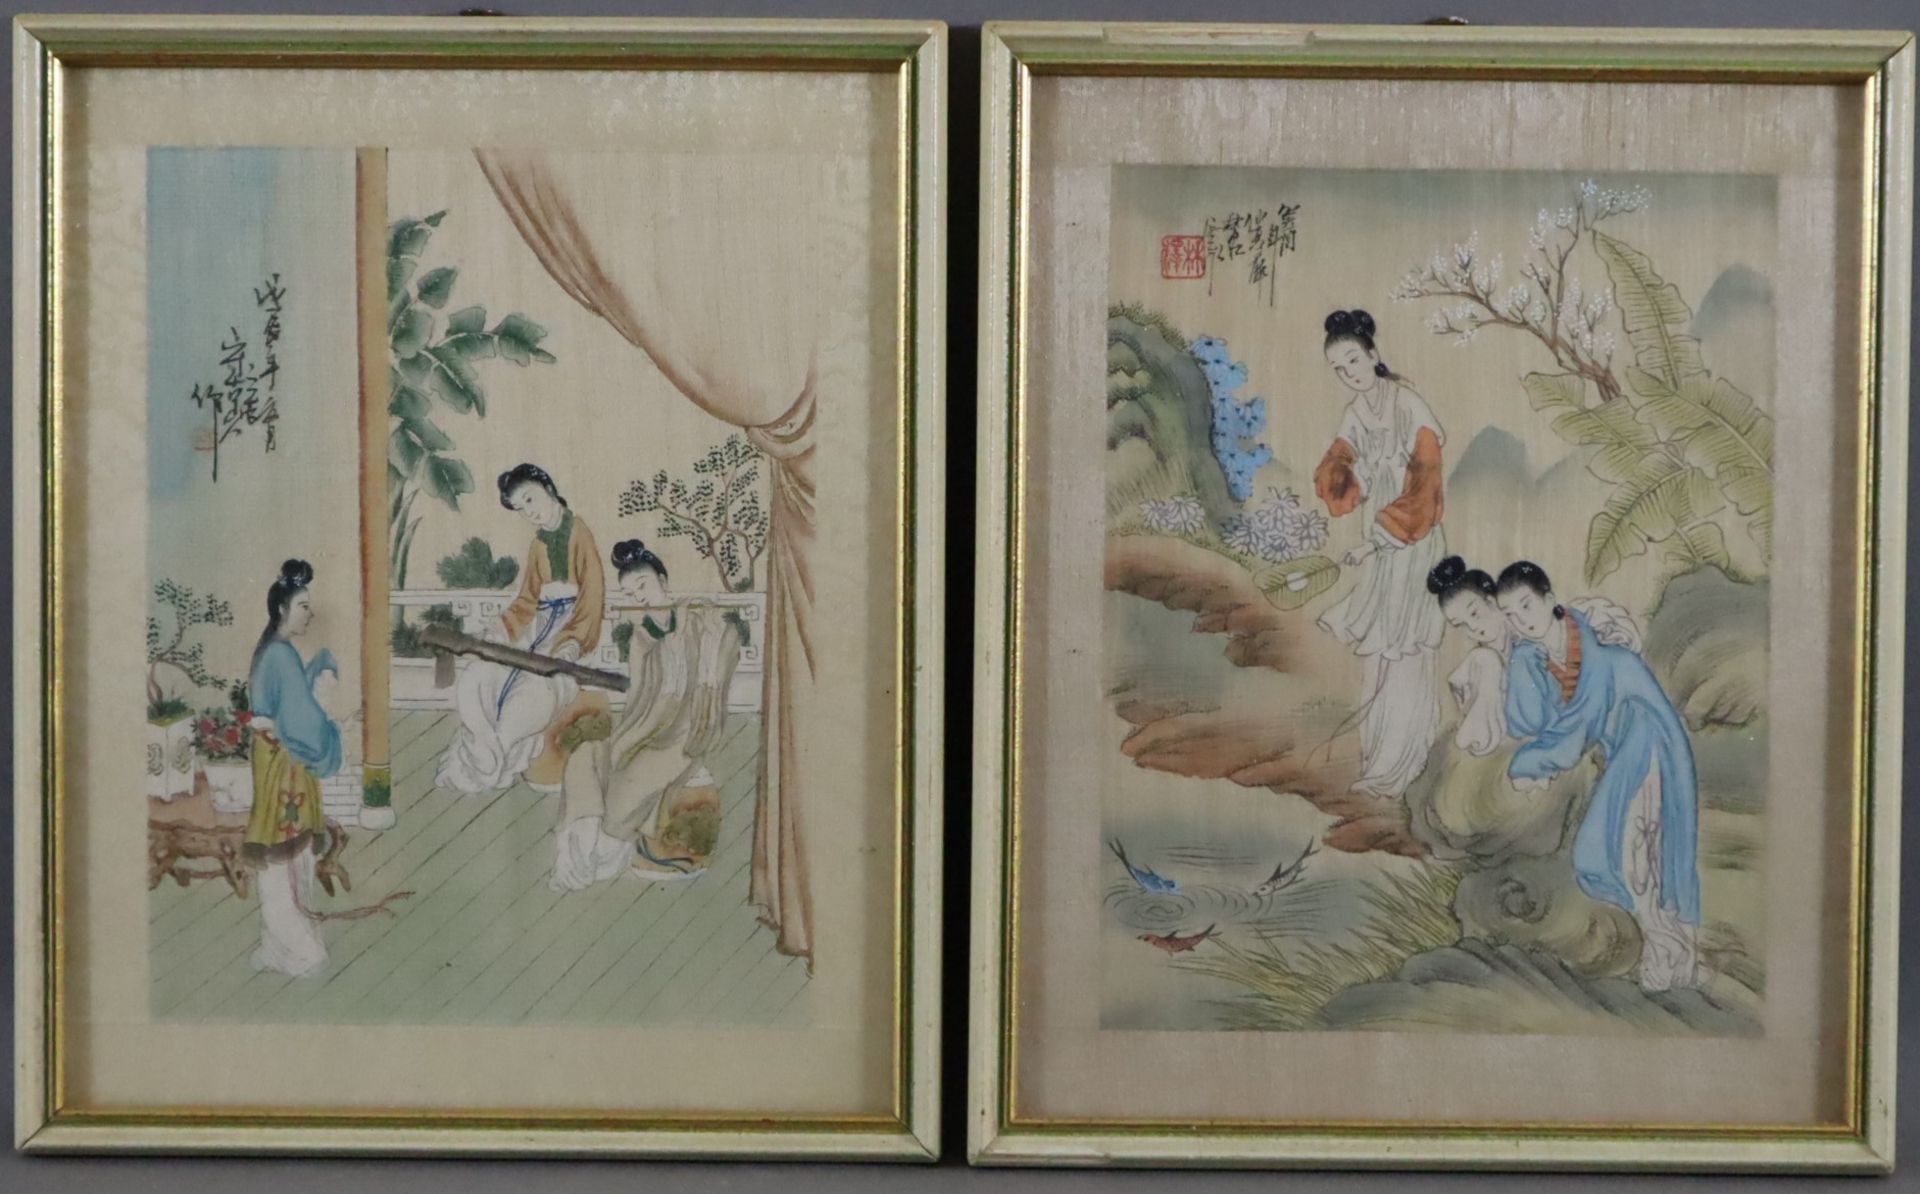 Zwei Seidenmalereien - China, jeweils drei junge Damen am Fischteich bzw. beim Musizieren, Tusche u